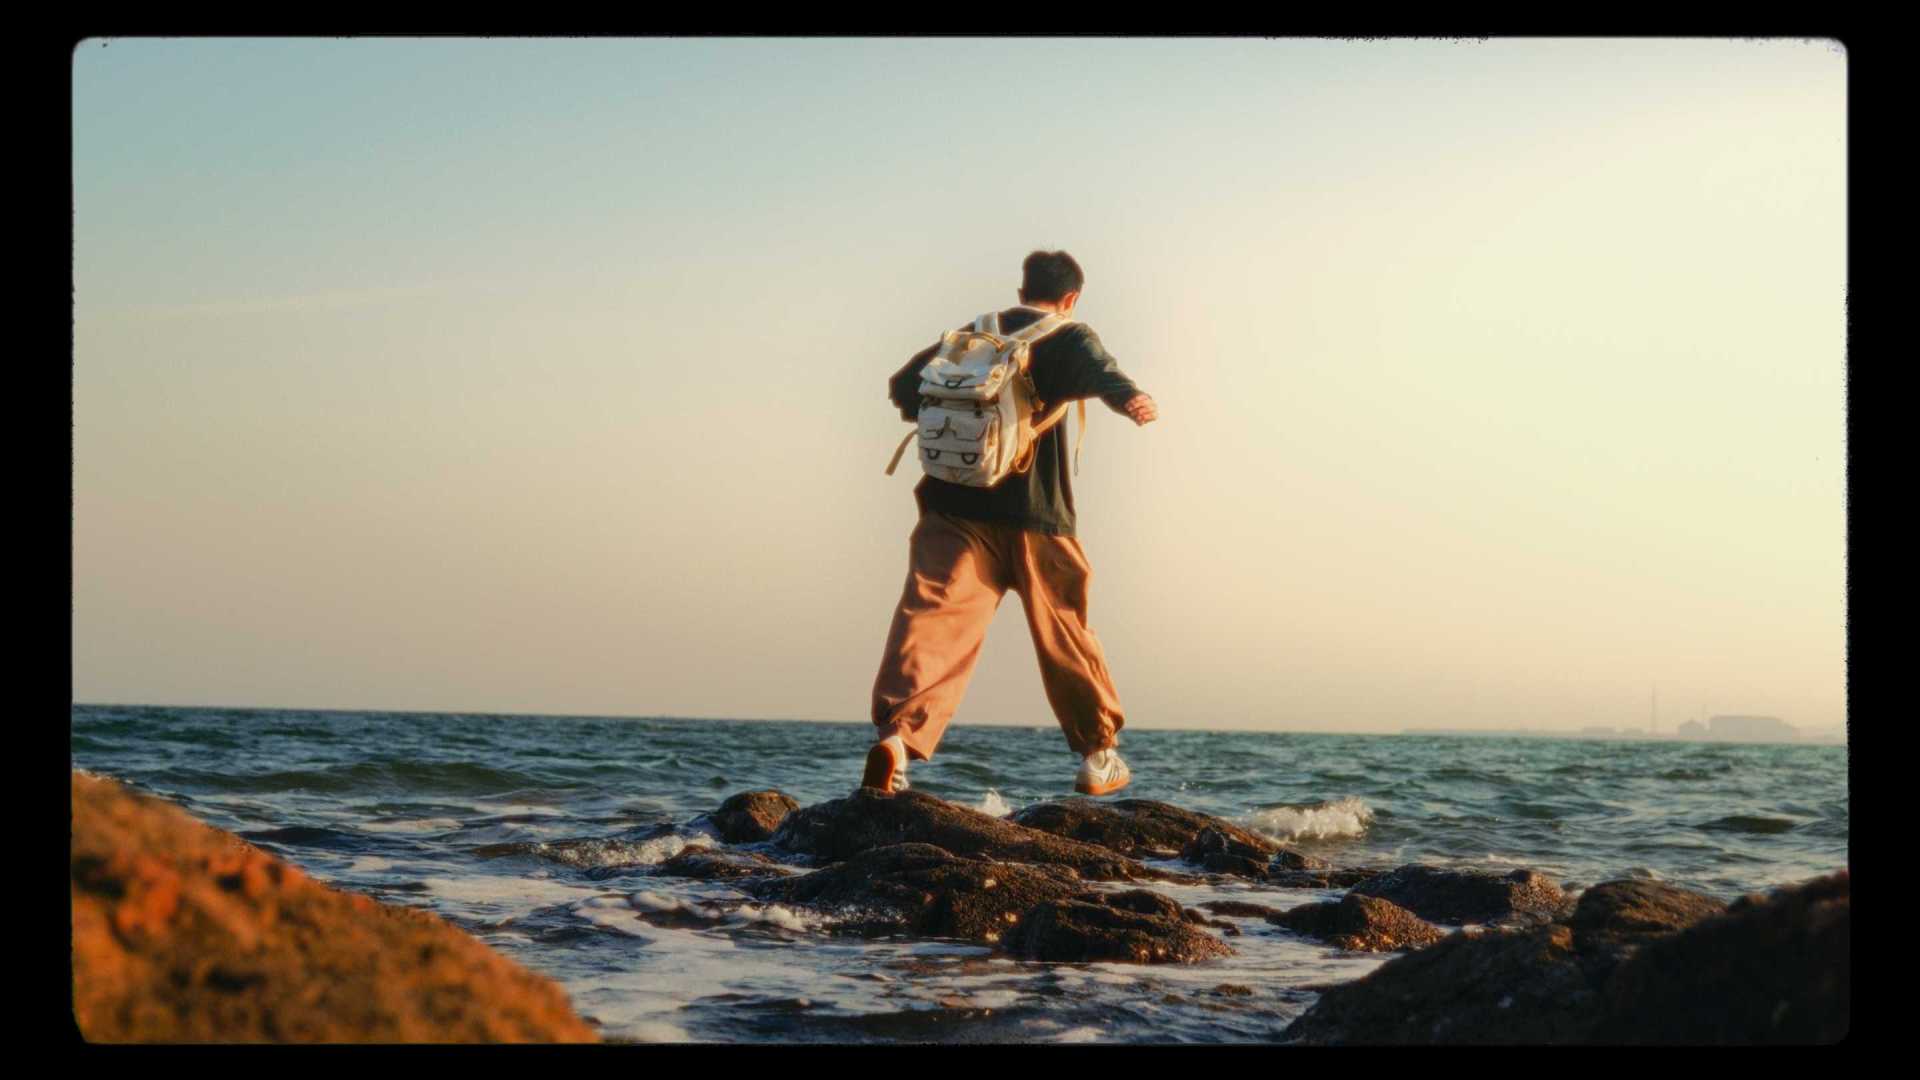 Vlog丨Cinematography丨在荒野里听海浪和风声丨胶片